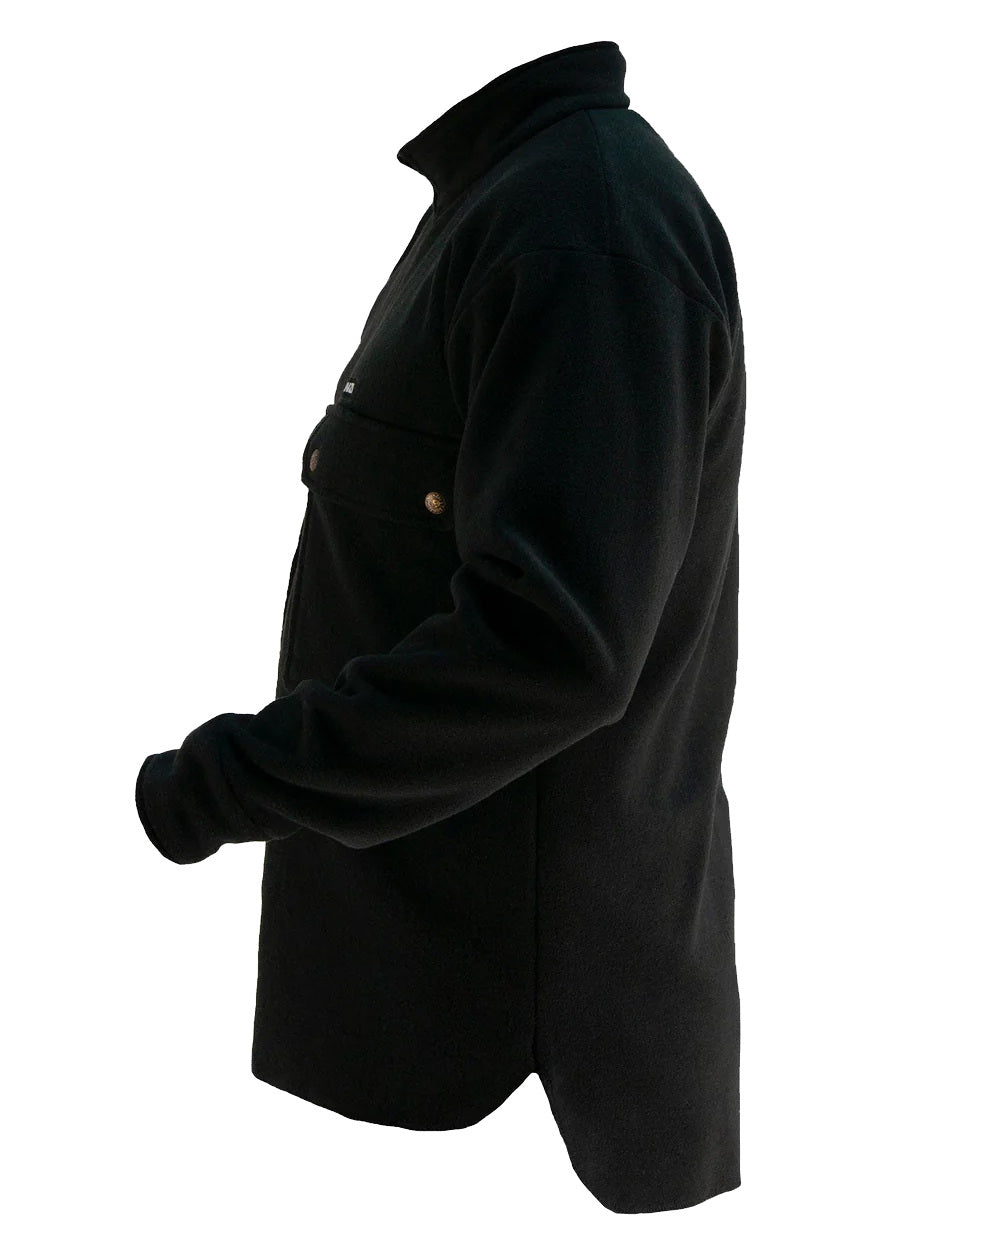 Black Coloured Swazi Back 40 Shirt On A White Background 